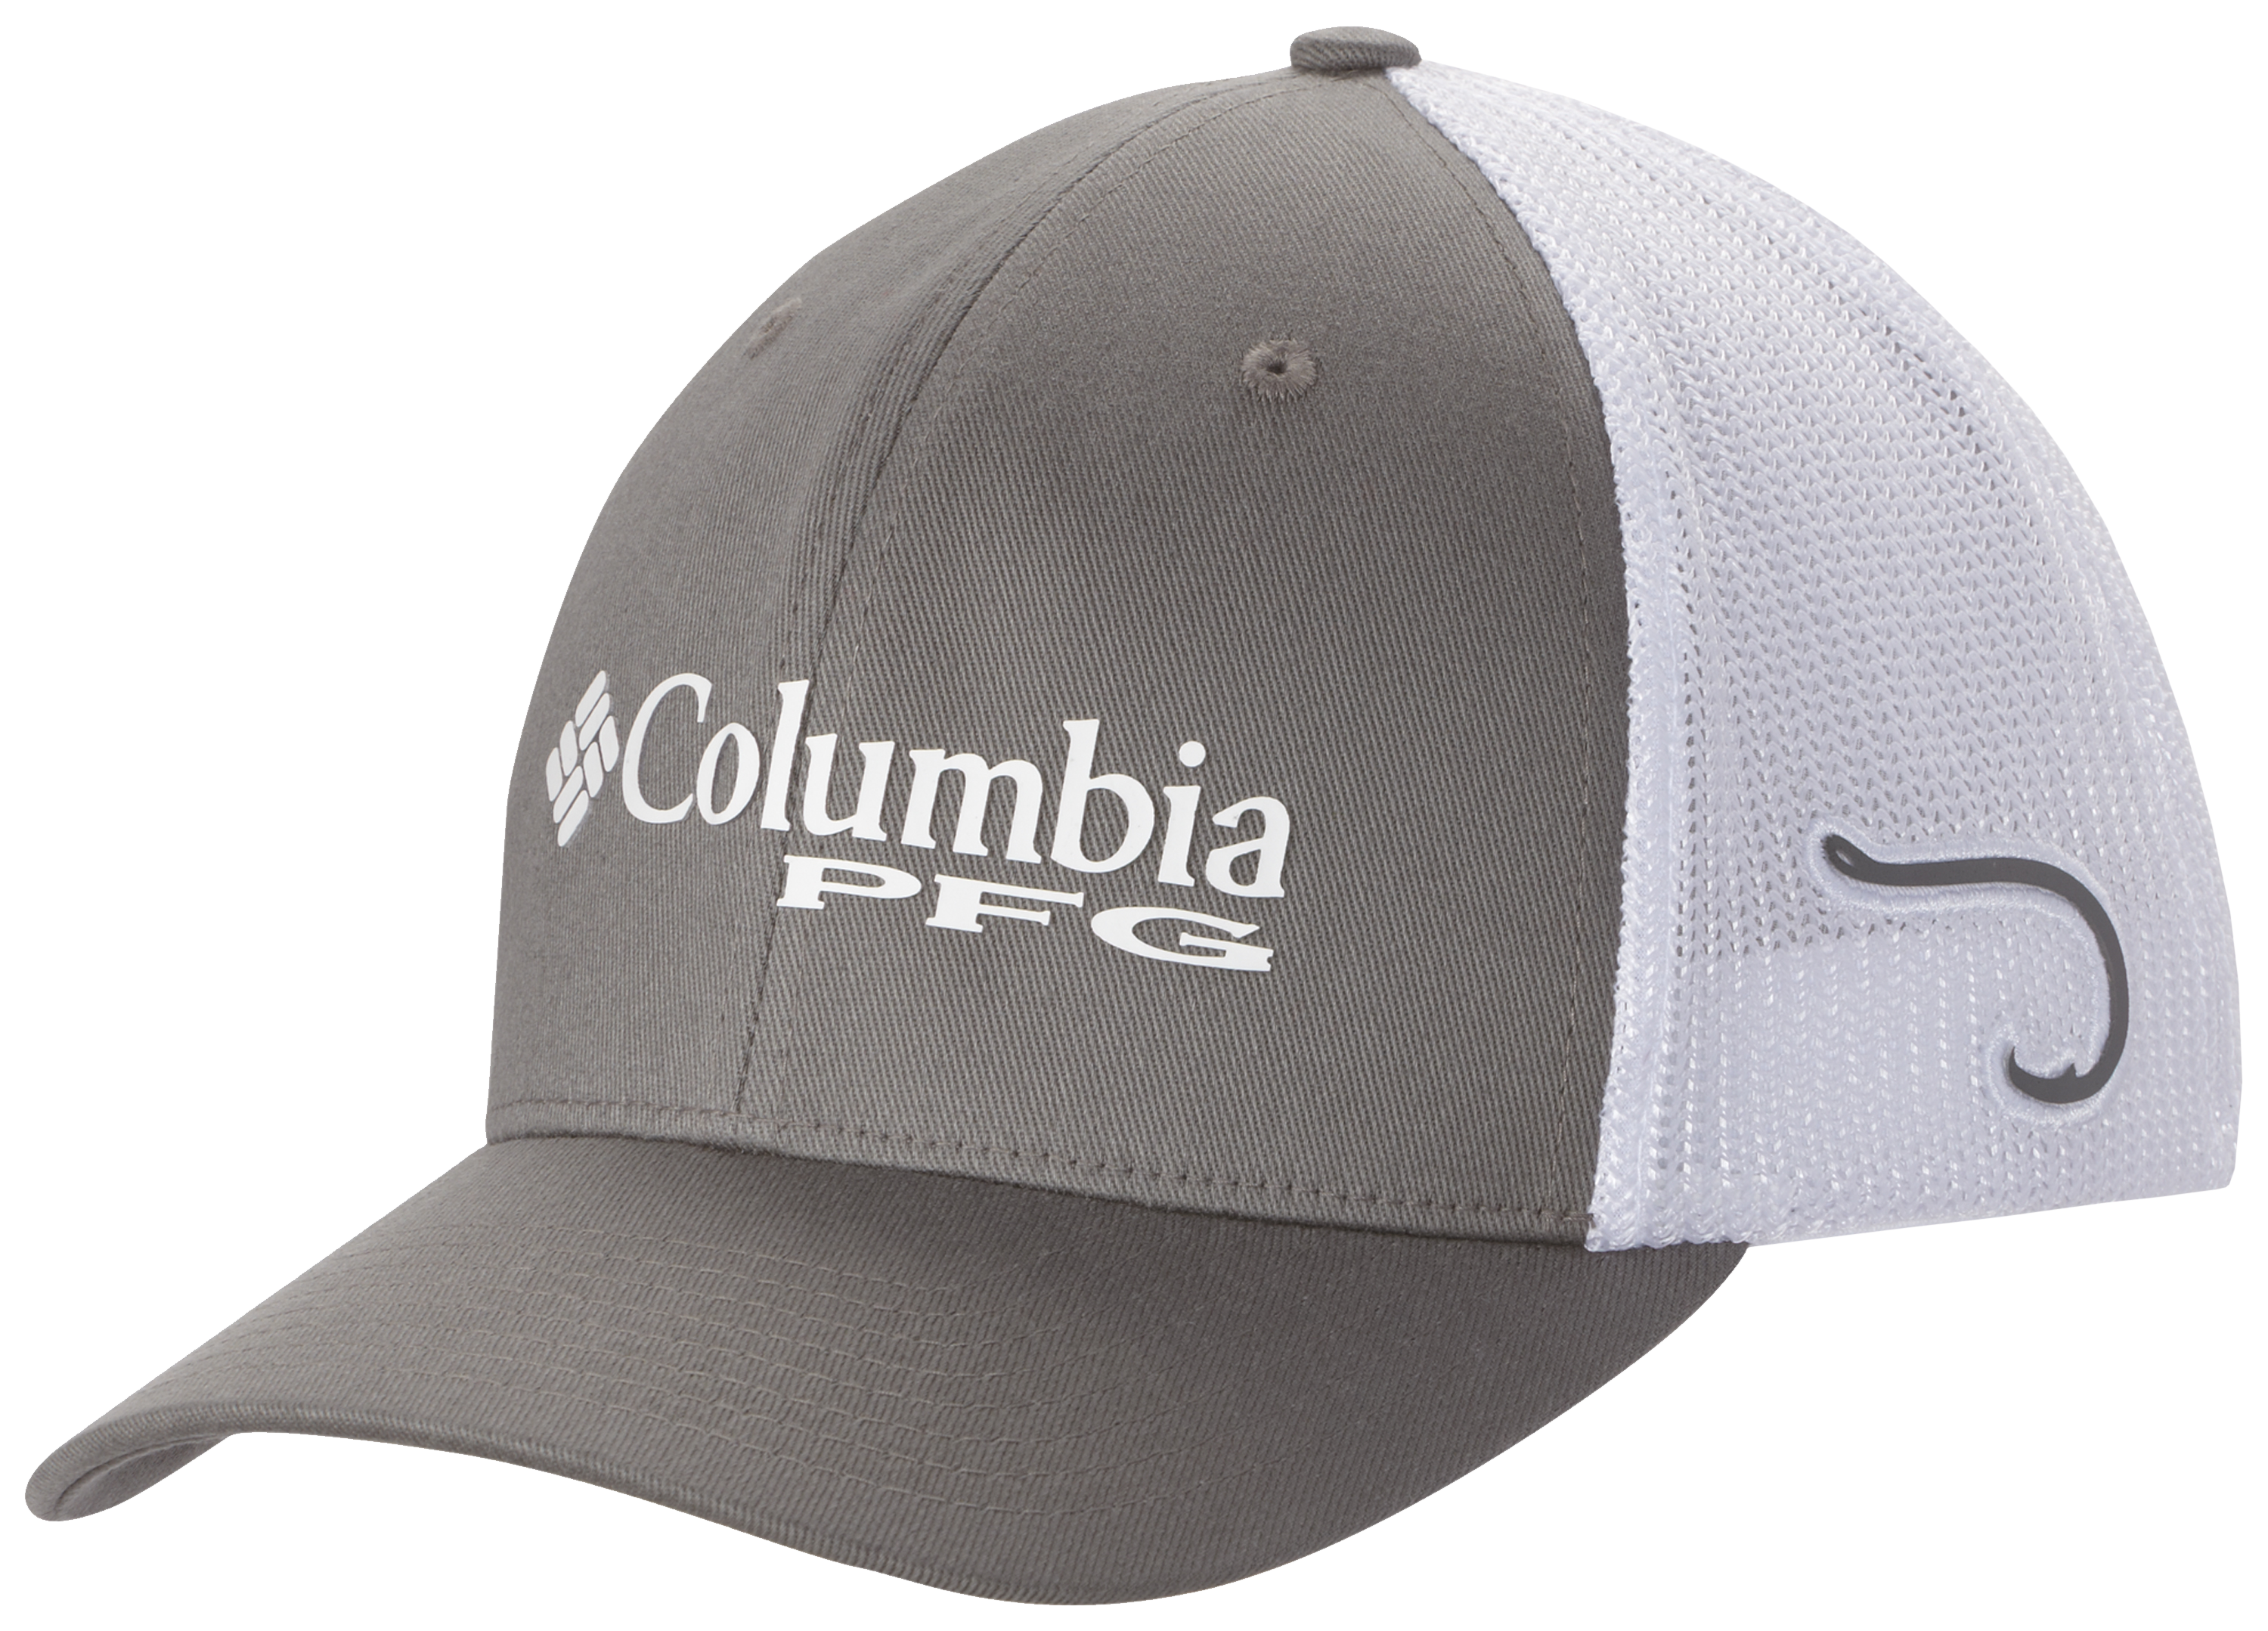 Columbia PFG Mesh Hooks Ball Cap - S/M